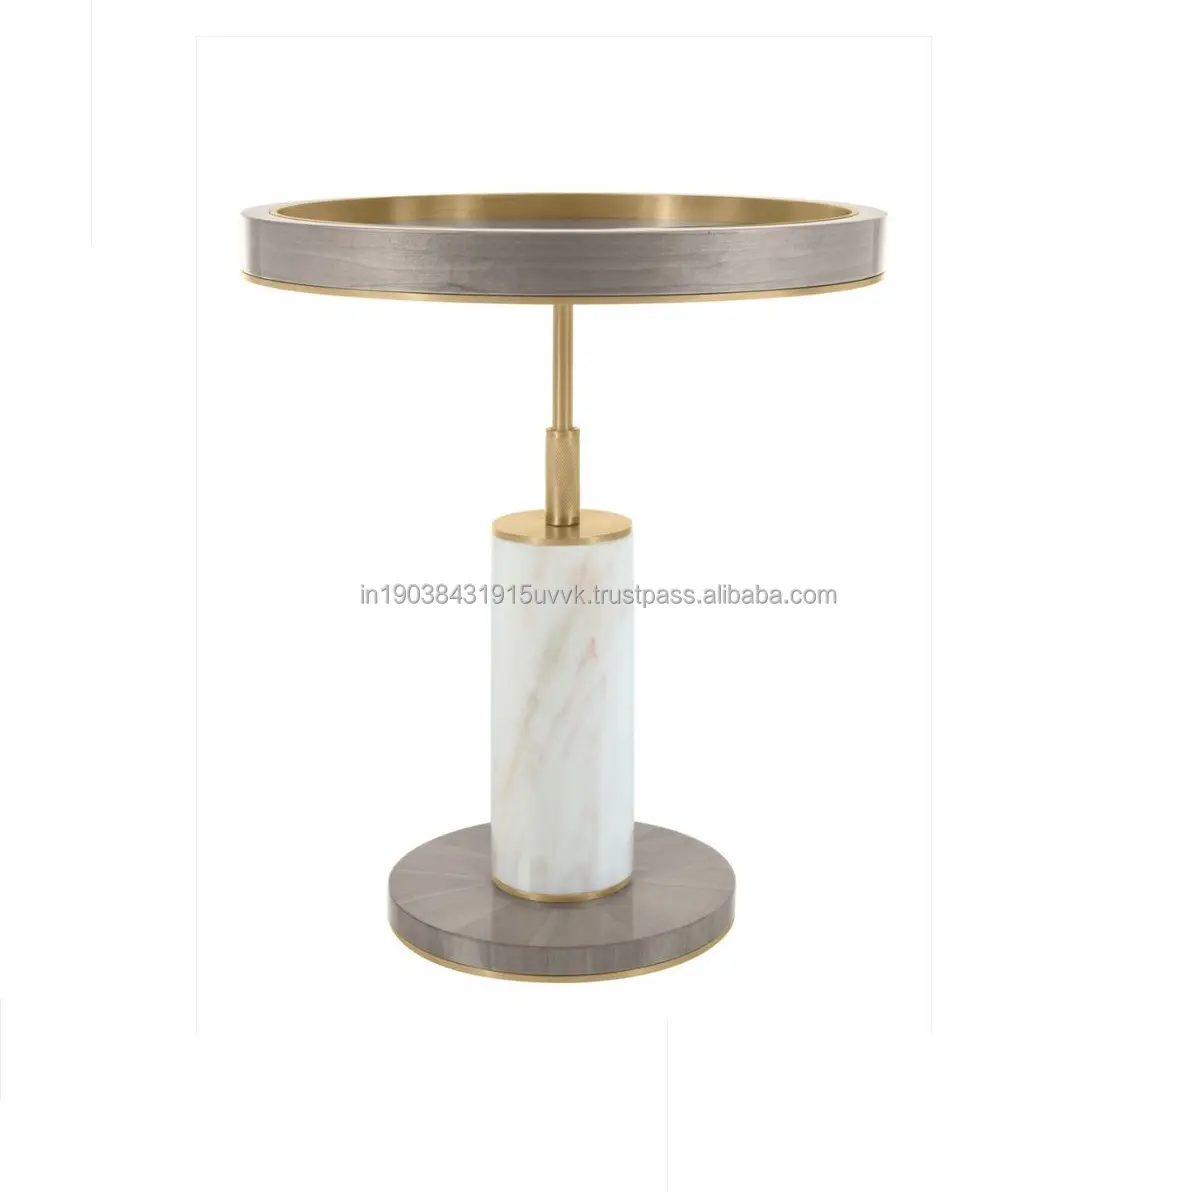 Table basse en métal Meubles de maison de luxe Thème bohème américain Accent royal Attrayant Table basse Canapé Table d'appoint